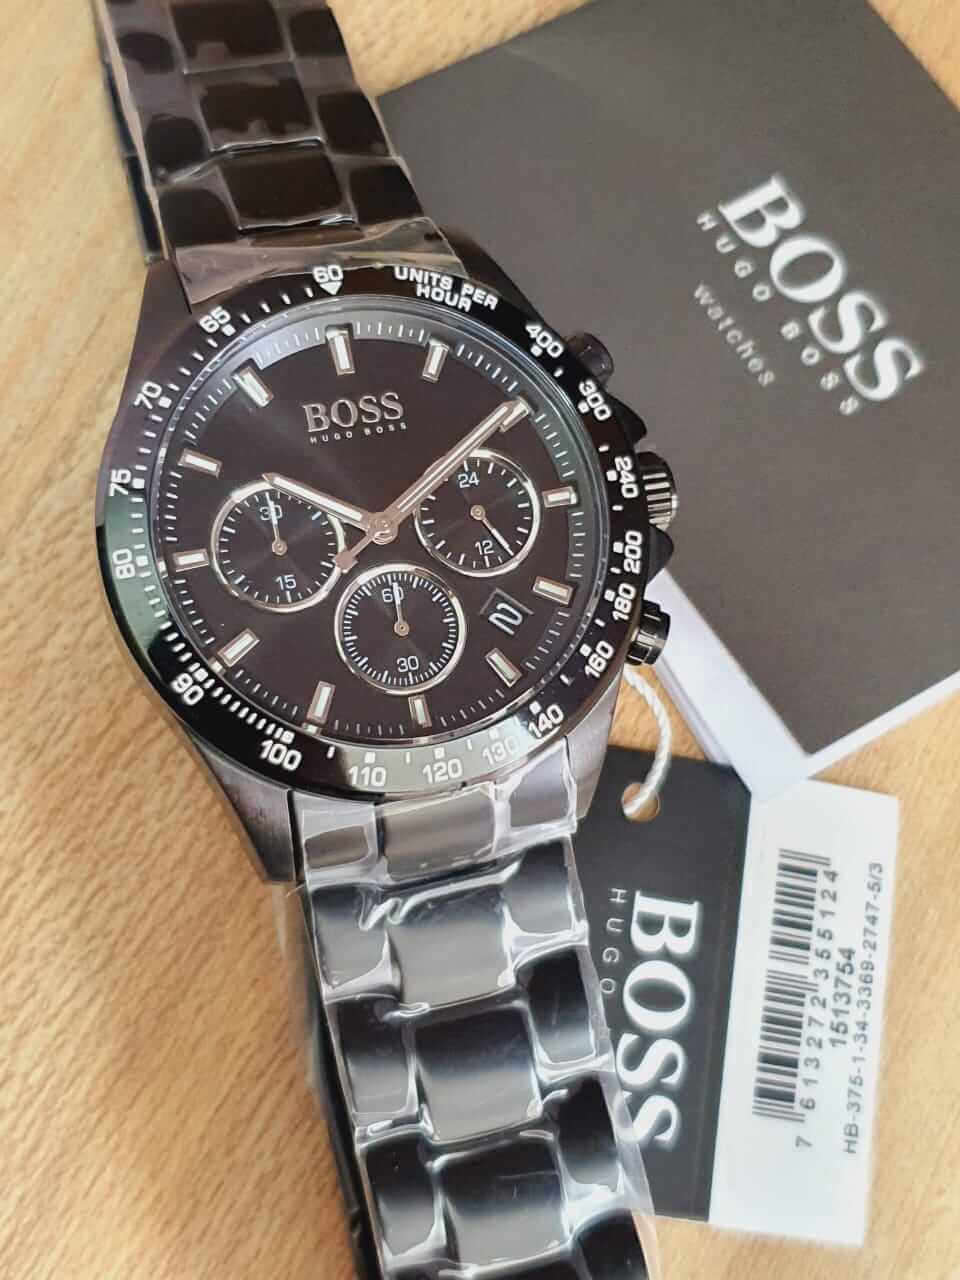 Hugo Boss Hero Black Dial Black Stainless Steel Strap Watch for Men - 1513754